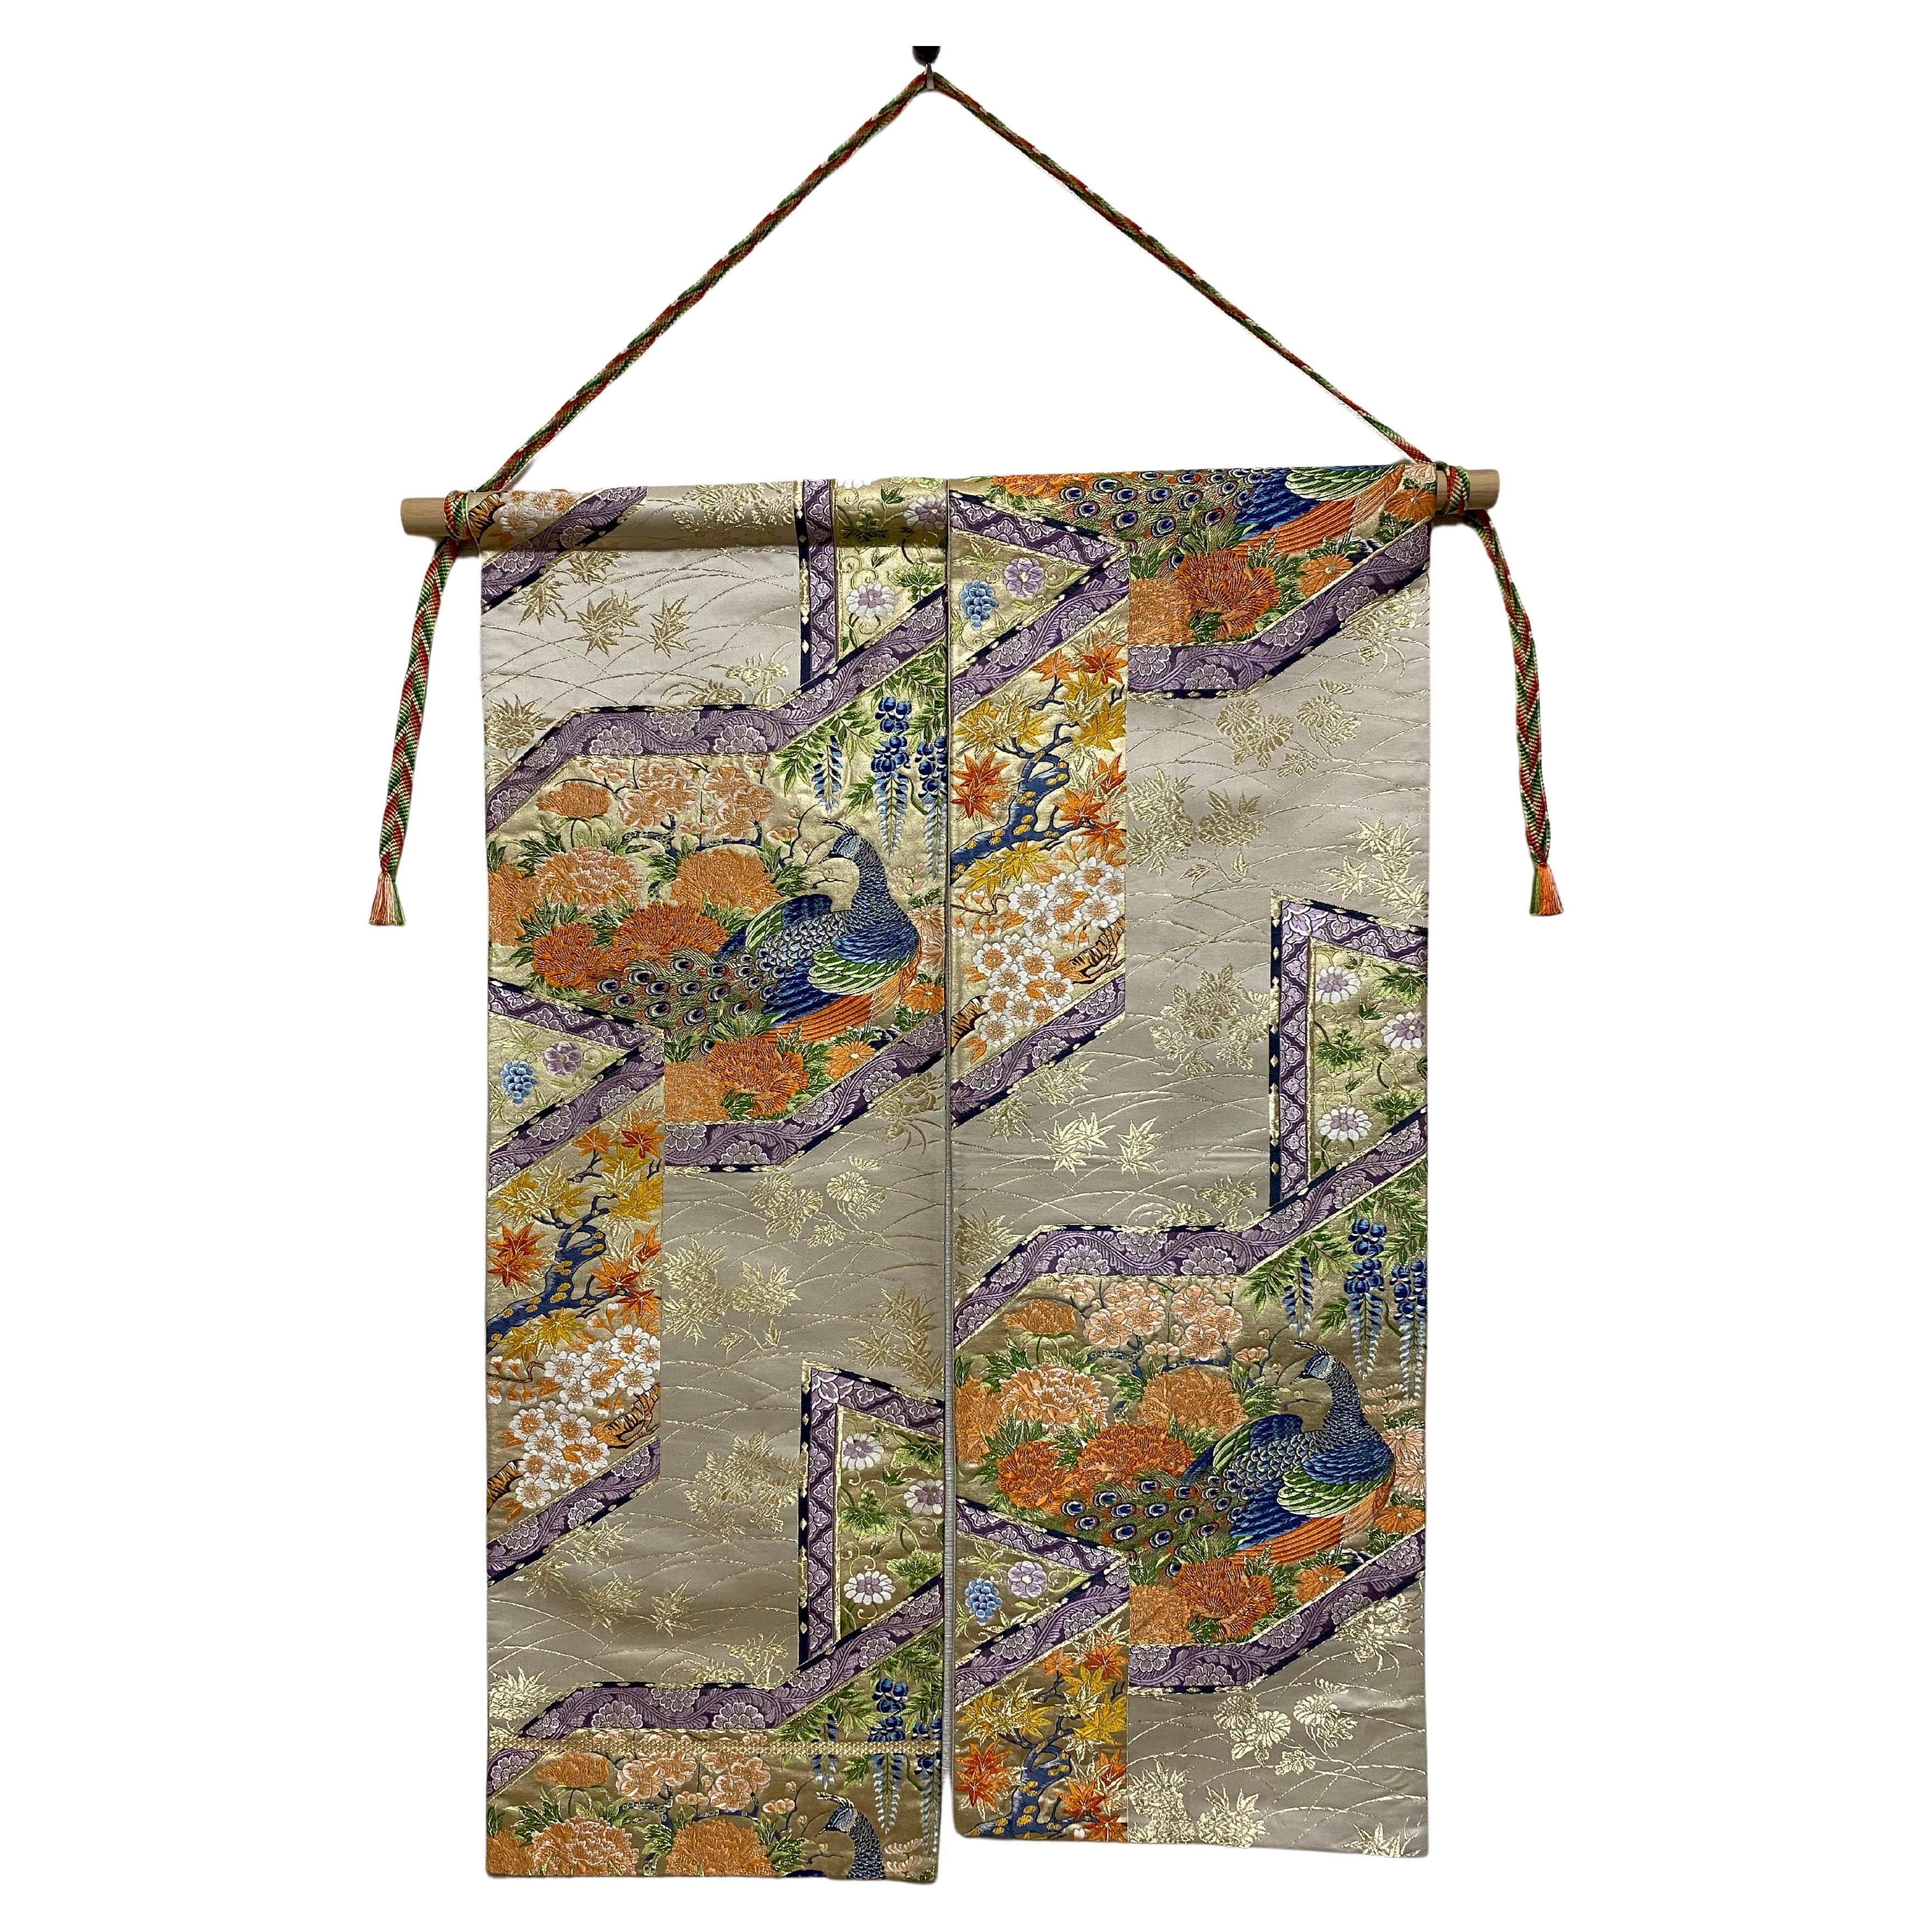  Japanese Art / Kimono Art / Tapestry, the King of Peacocks For Sale